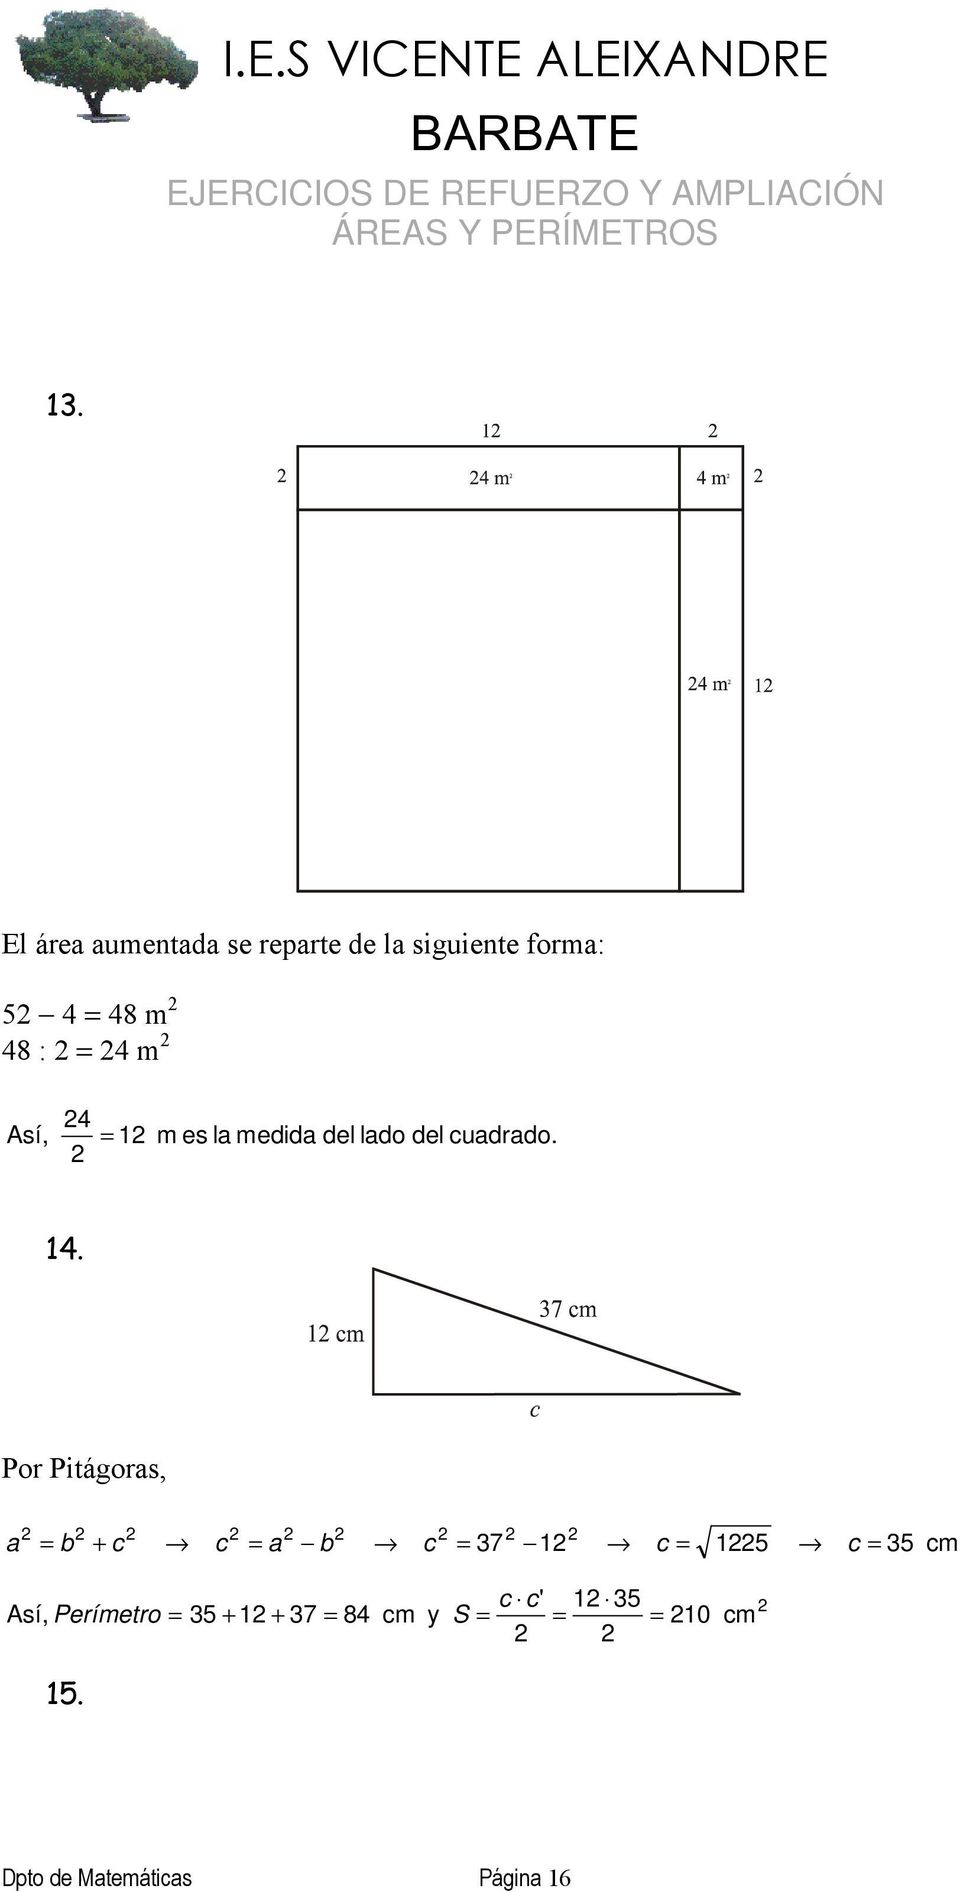 Por Pitágoras, a = b + c c = a b c = 37 1 c = 15 c = 35 c c' 1 35